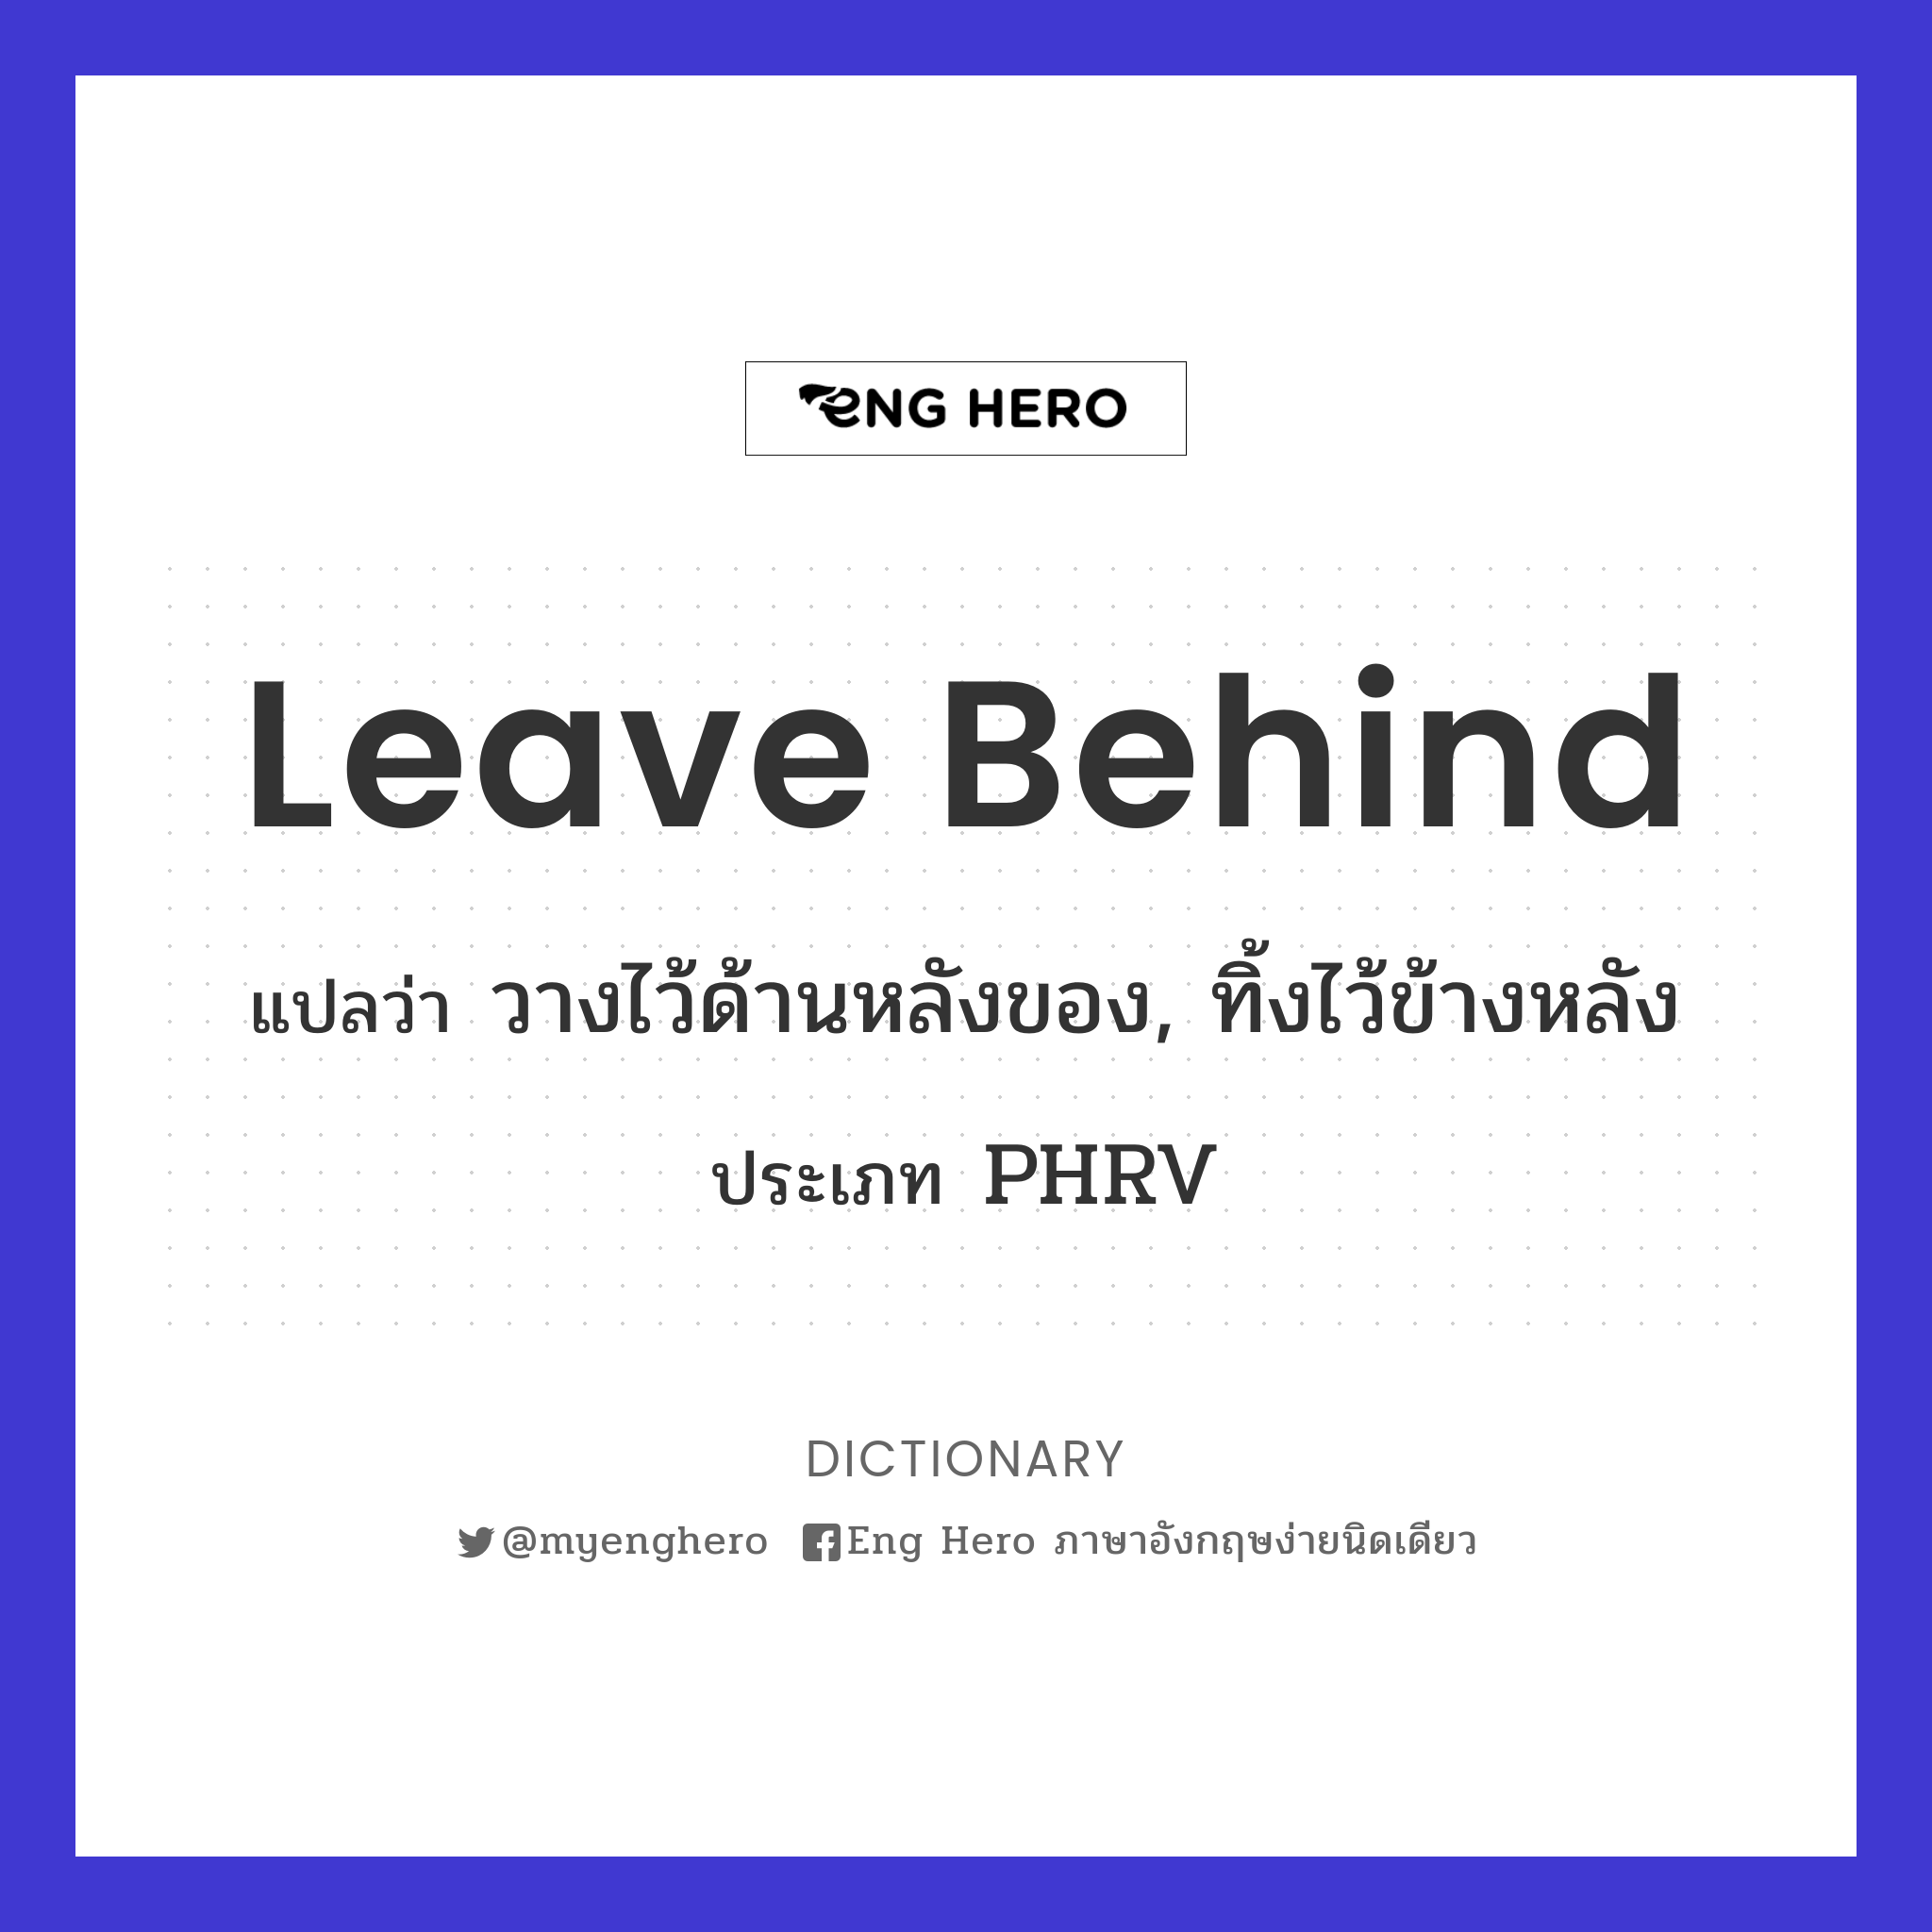 leave behind